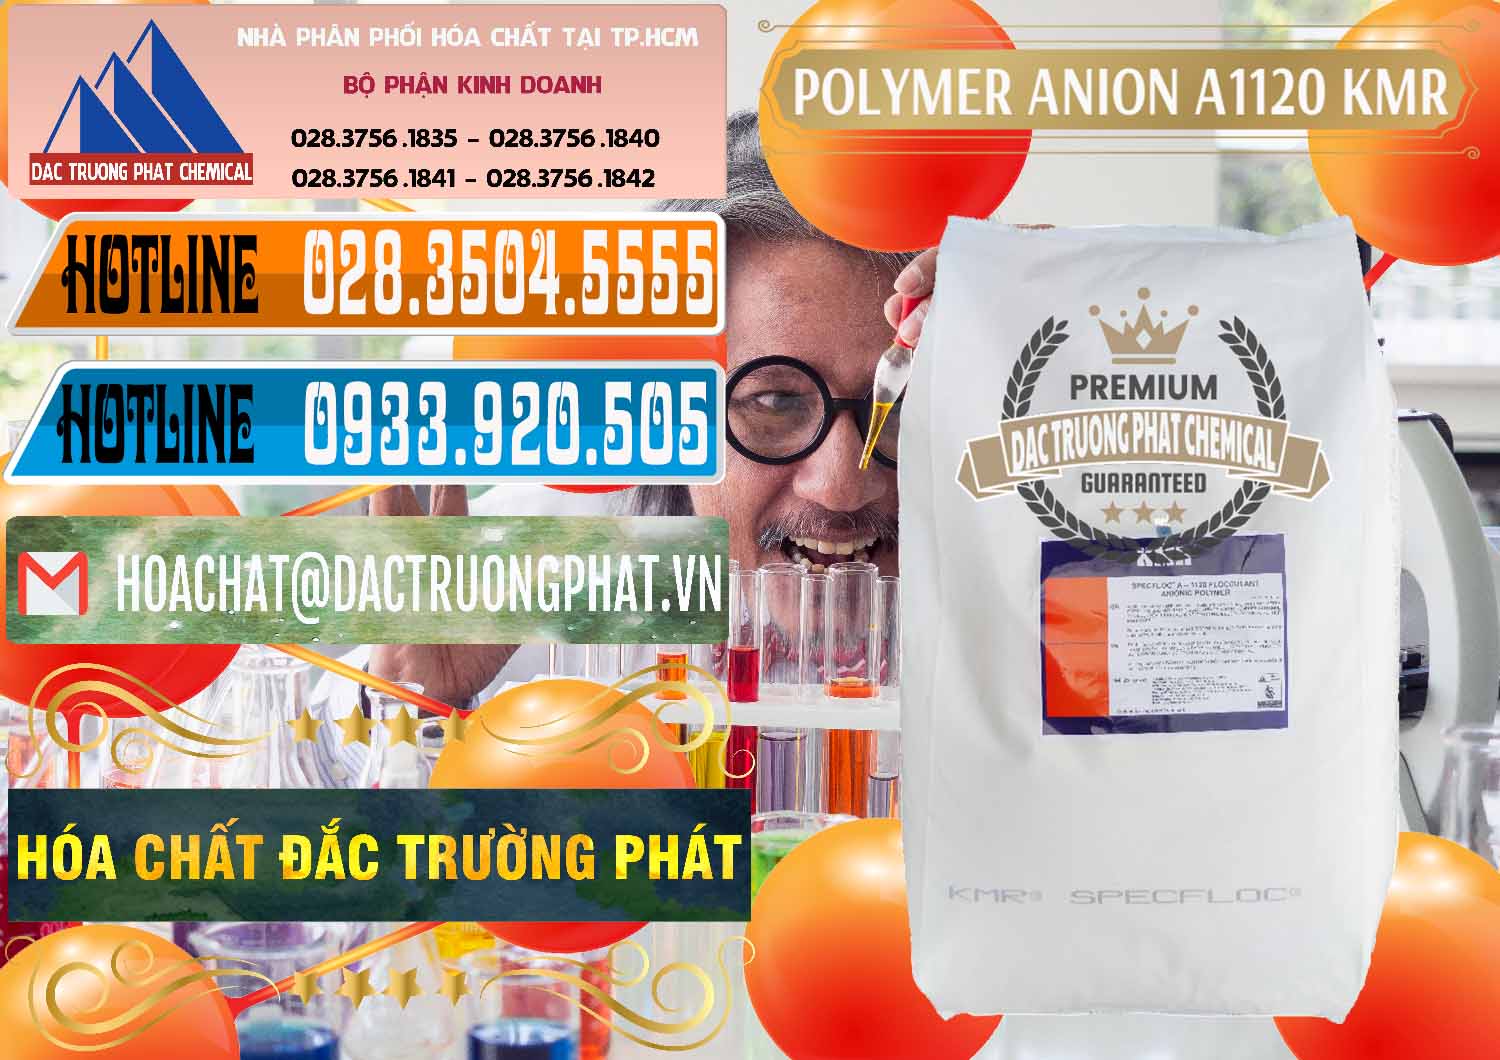 Chuyên kinh doanh - bán Polymer Anion A1120 - KMR Anh Quốc England - 0119 - Công ty kinh doanh _ cung cấp hóa chất tại TP.HCM - stmp.net